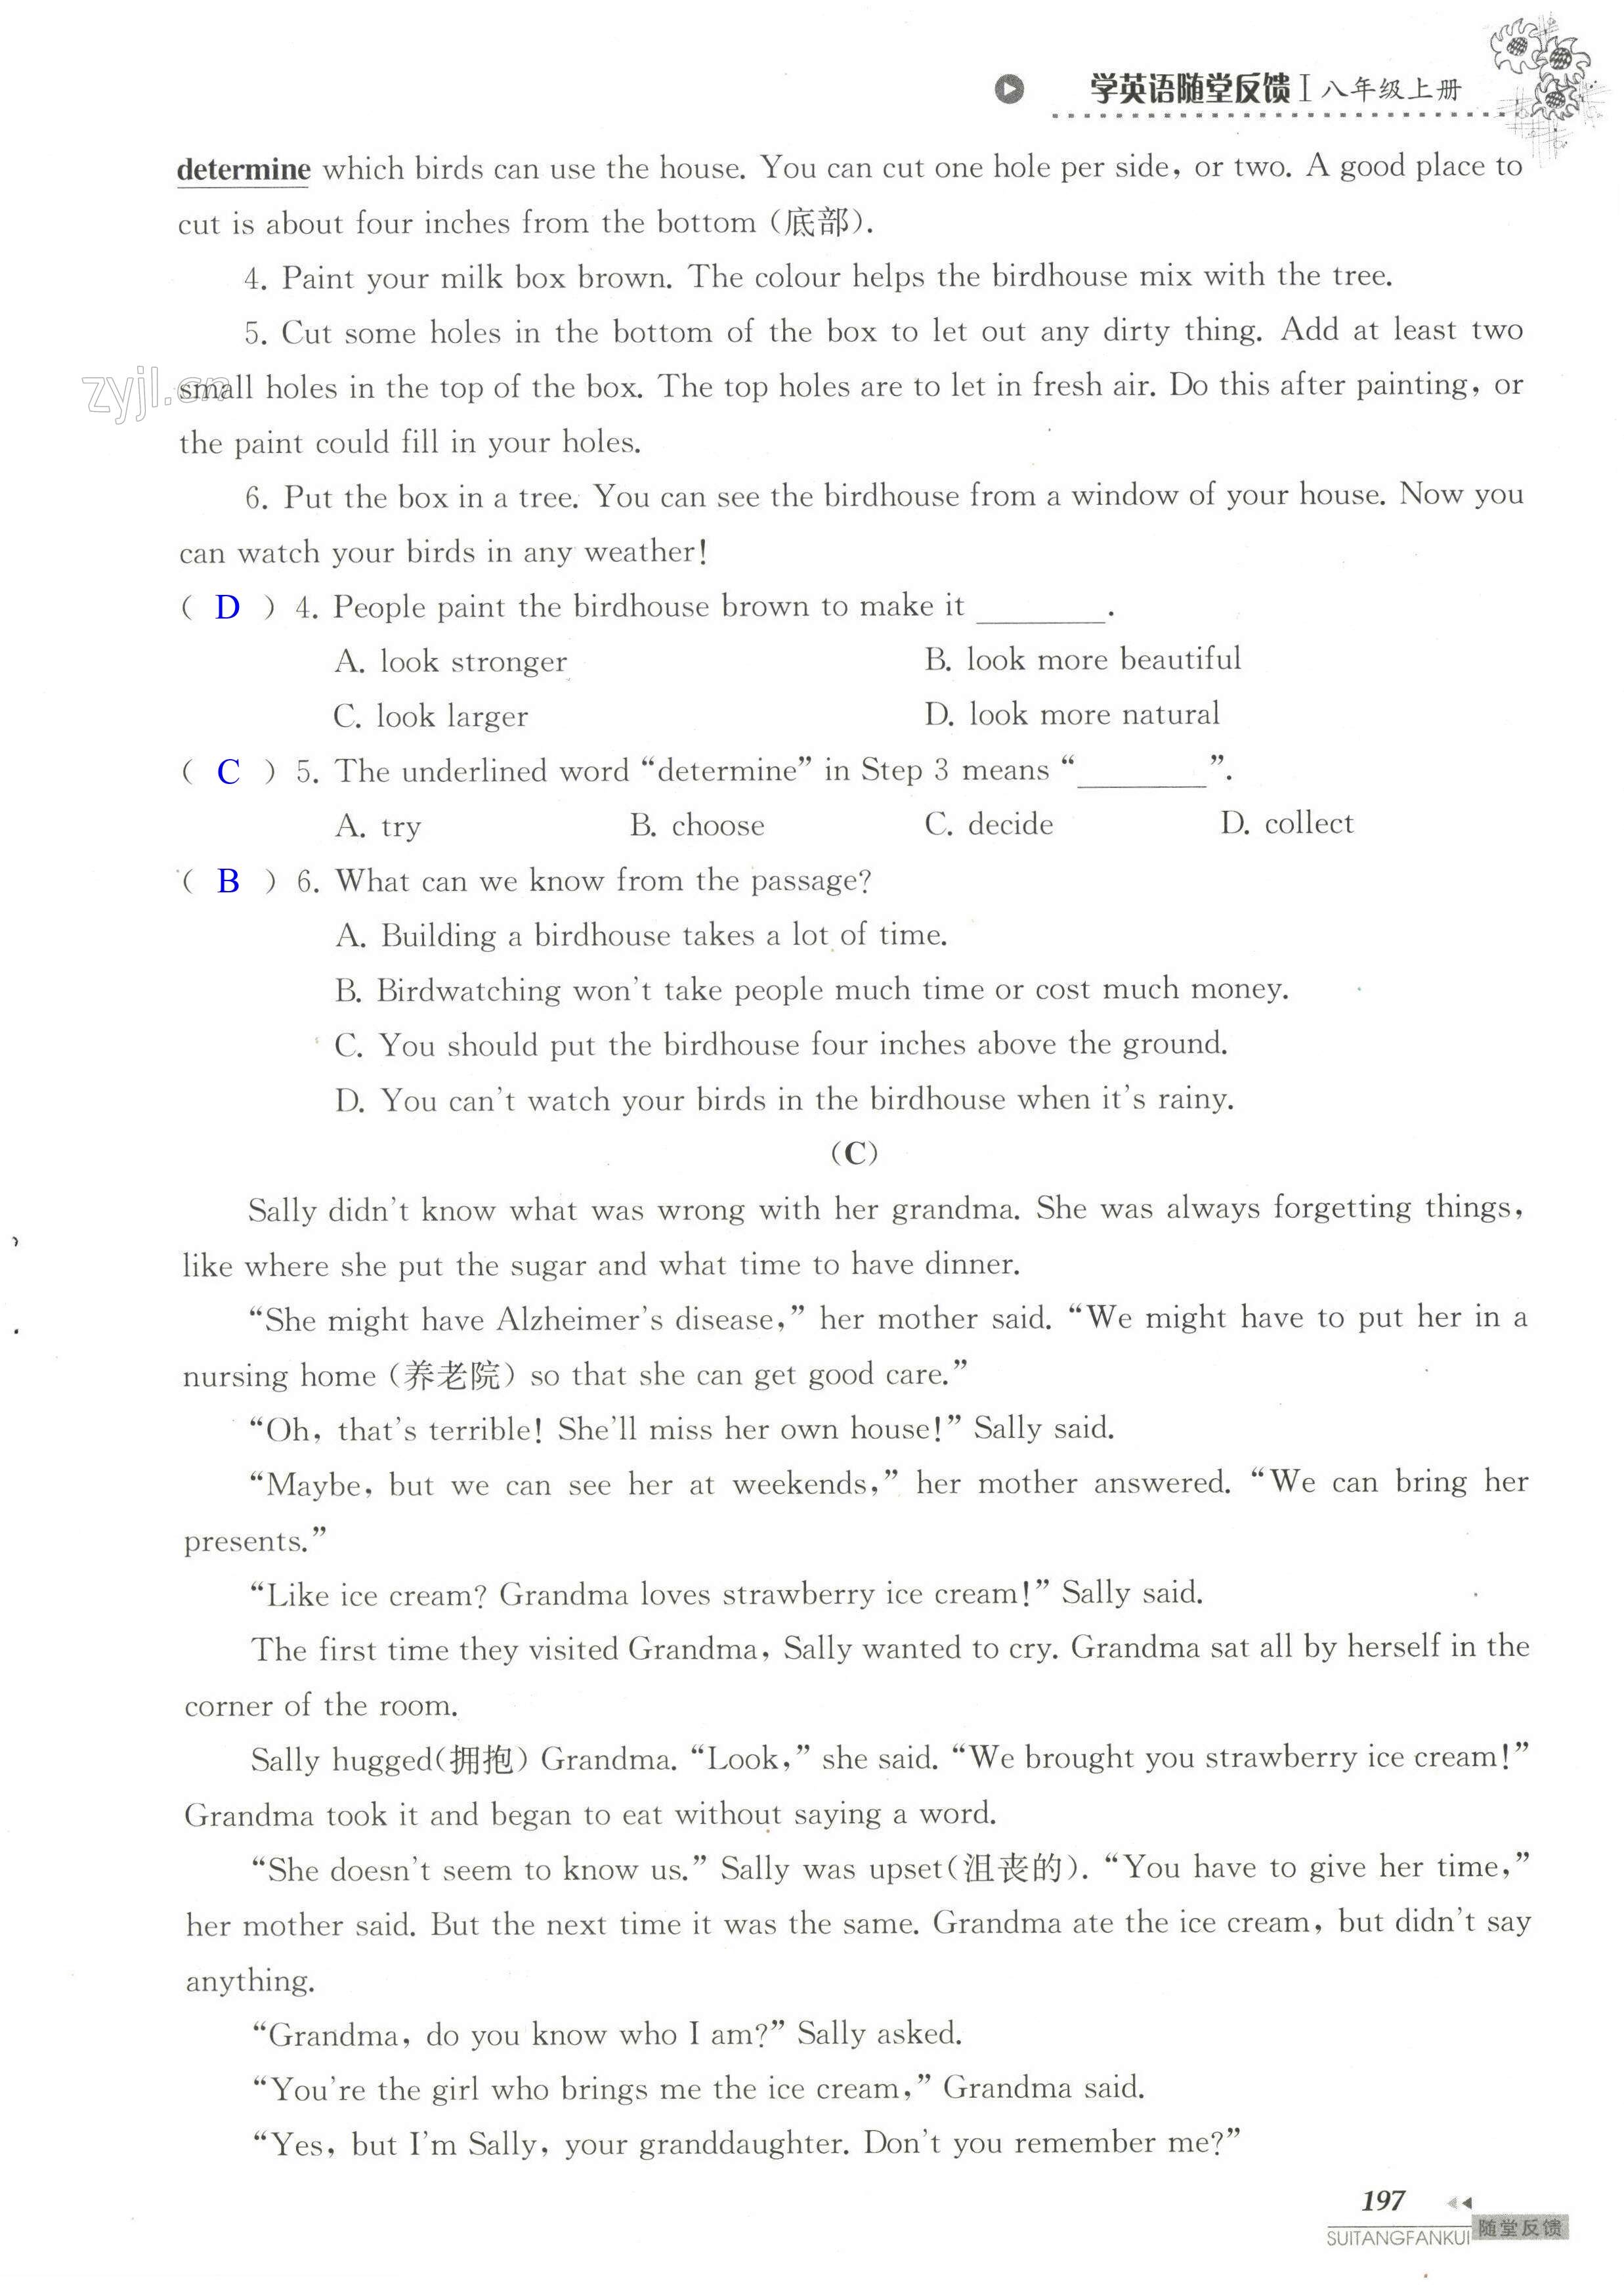 单元综合测试卷 Test for Unit 6 of 8A - 第197页